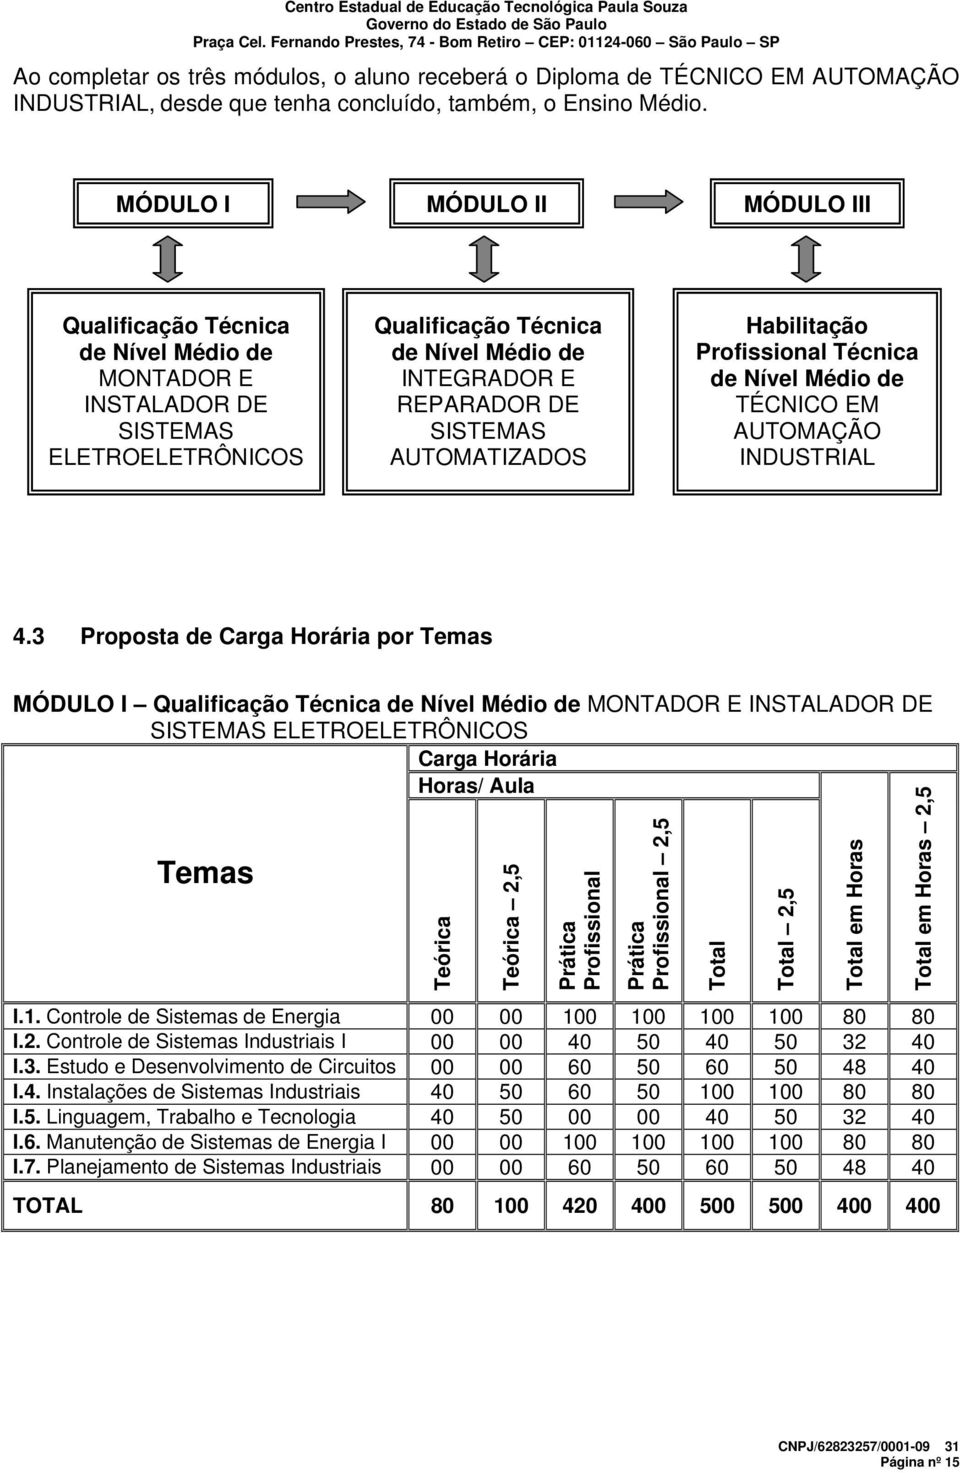 AUTOMATIZADOS Habilitação Profissional Técnica de Nível Médio de TÉCNICO EM AUTOMAÇÃO INDUSTRIAL 4.